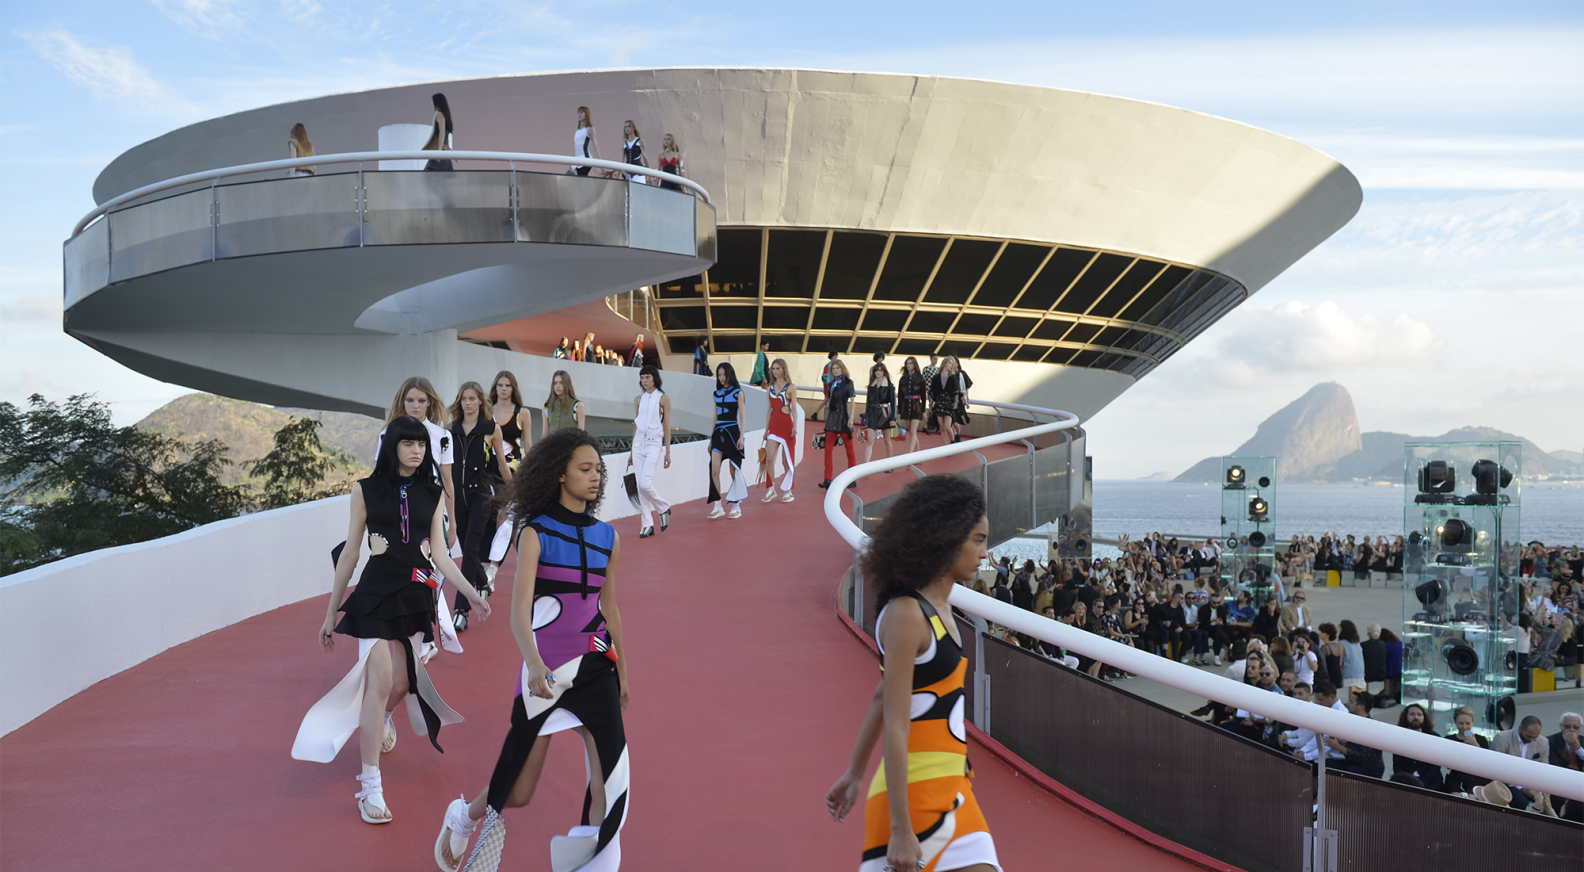 Louis Vuitton debuts Cruise collection in California - LVMH